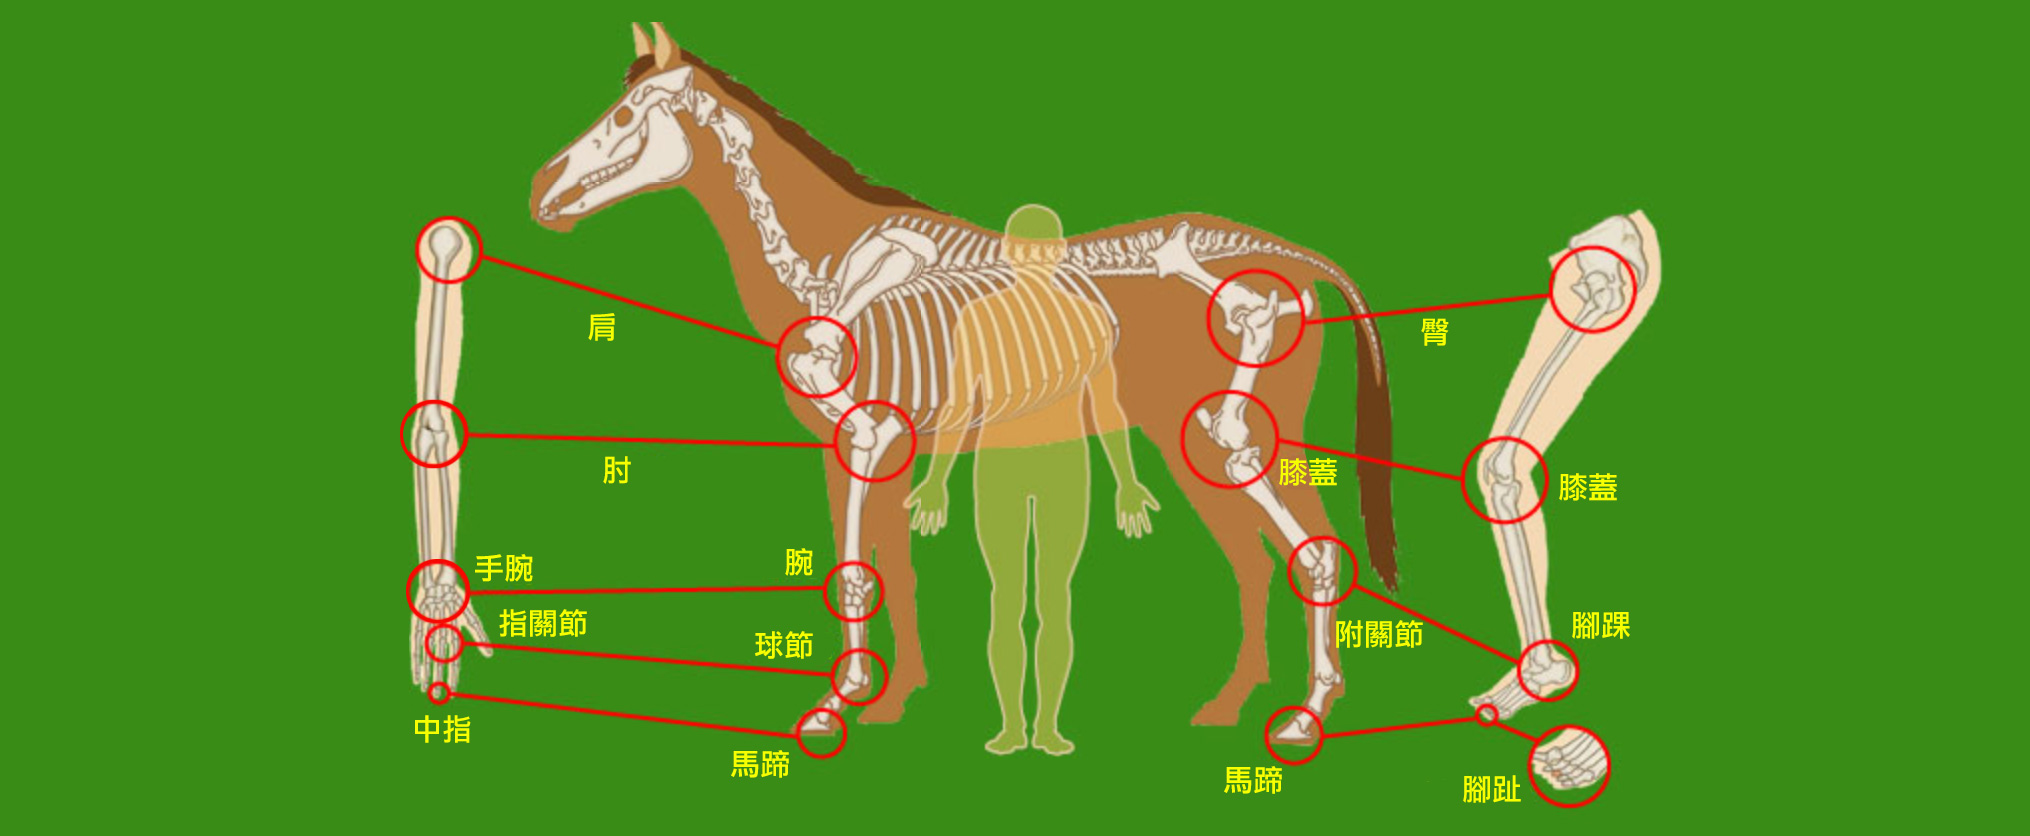 馬匹構造與人體結構比較  賽馬貼士